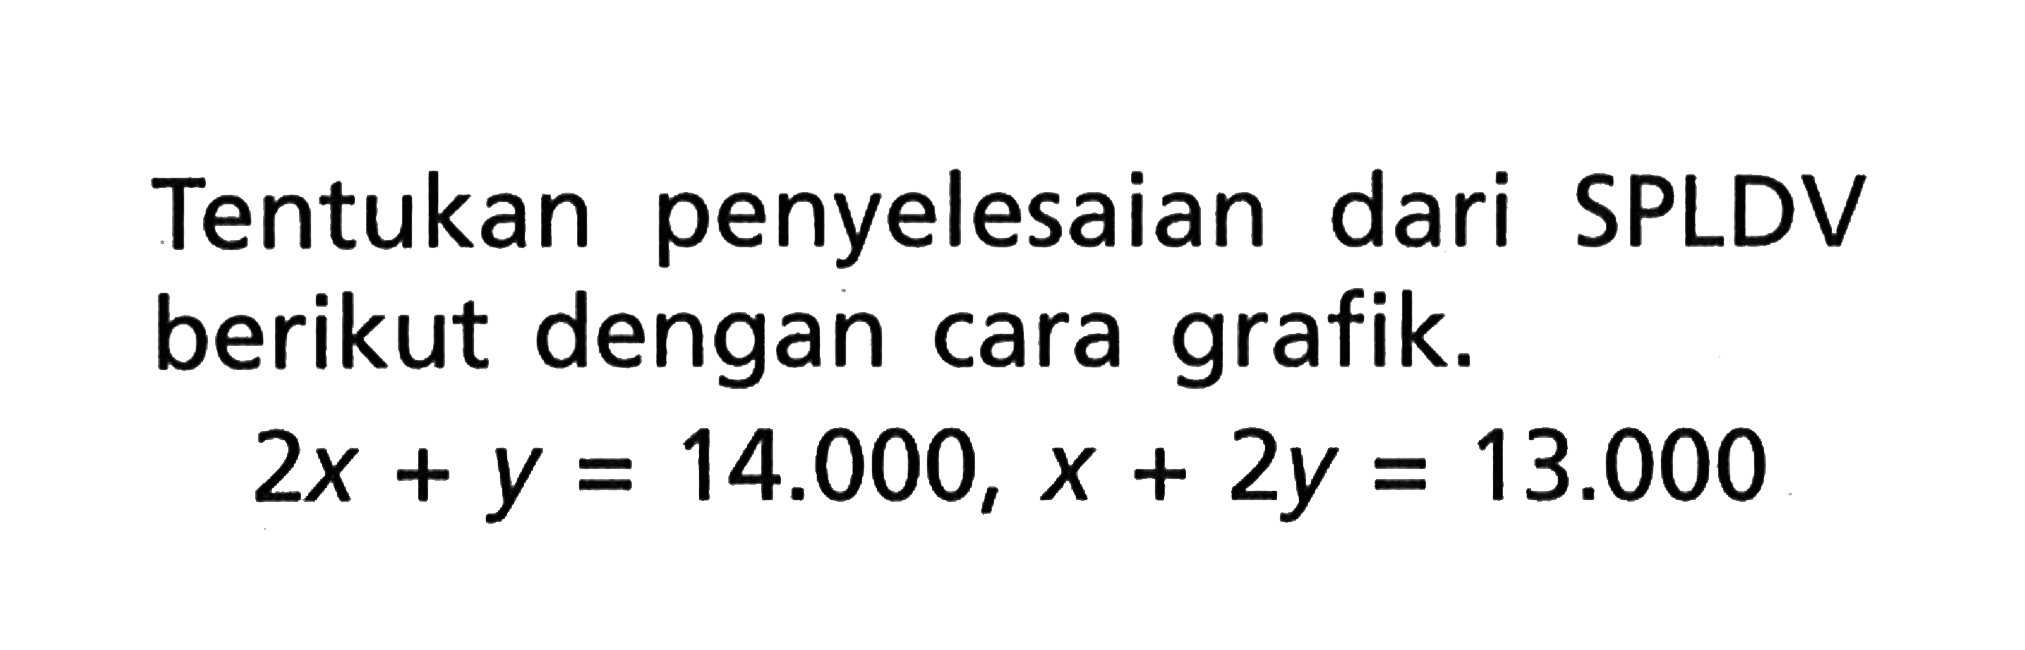 Tentukan penyelesaian dari SPLDV berikut dengan cara grafik. 2x + y = 14.000, x + 2y = 13.000